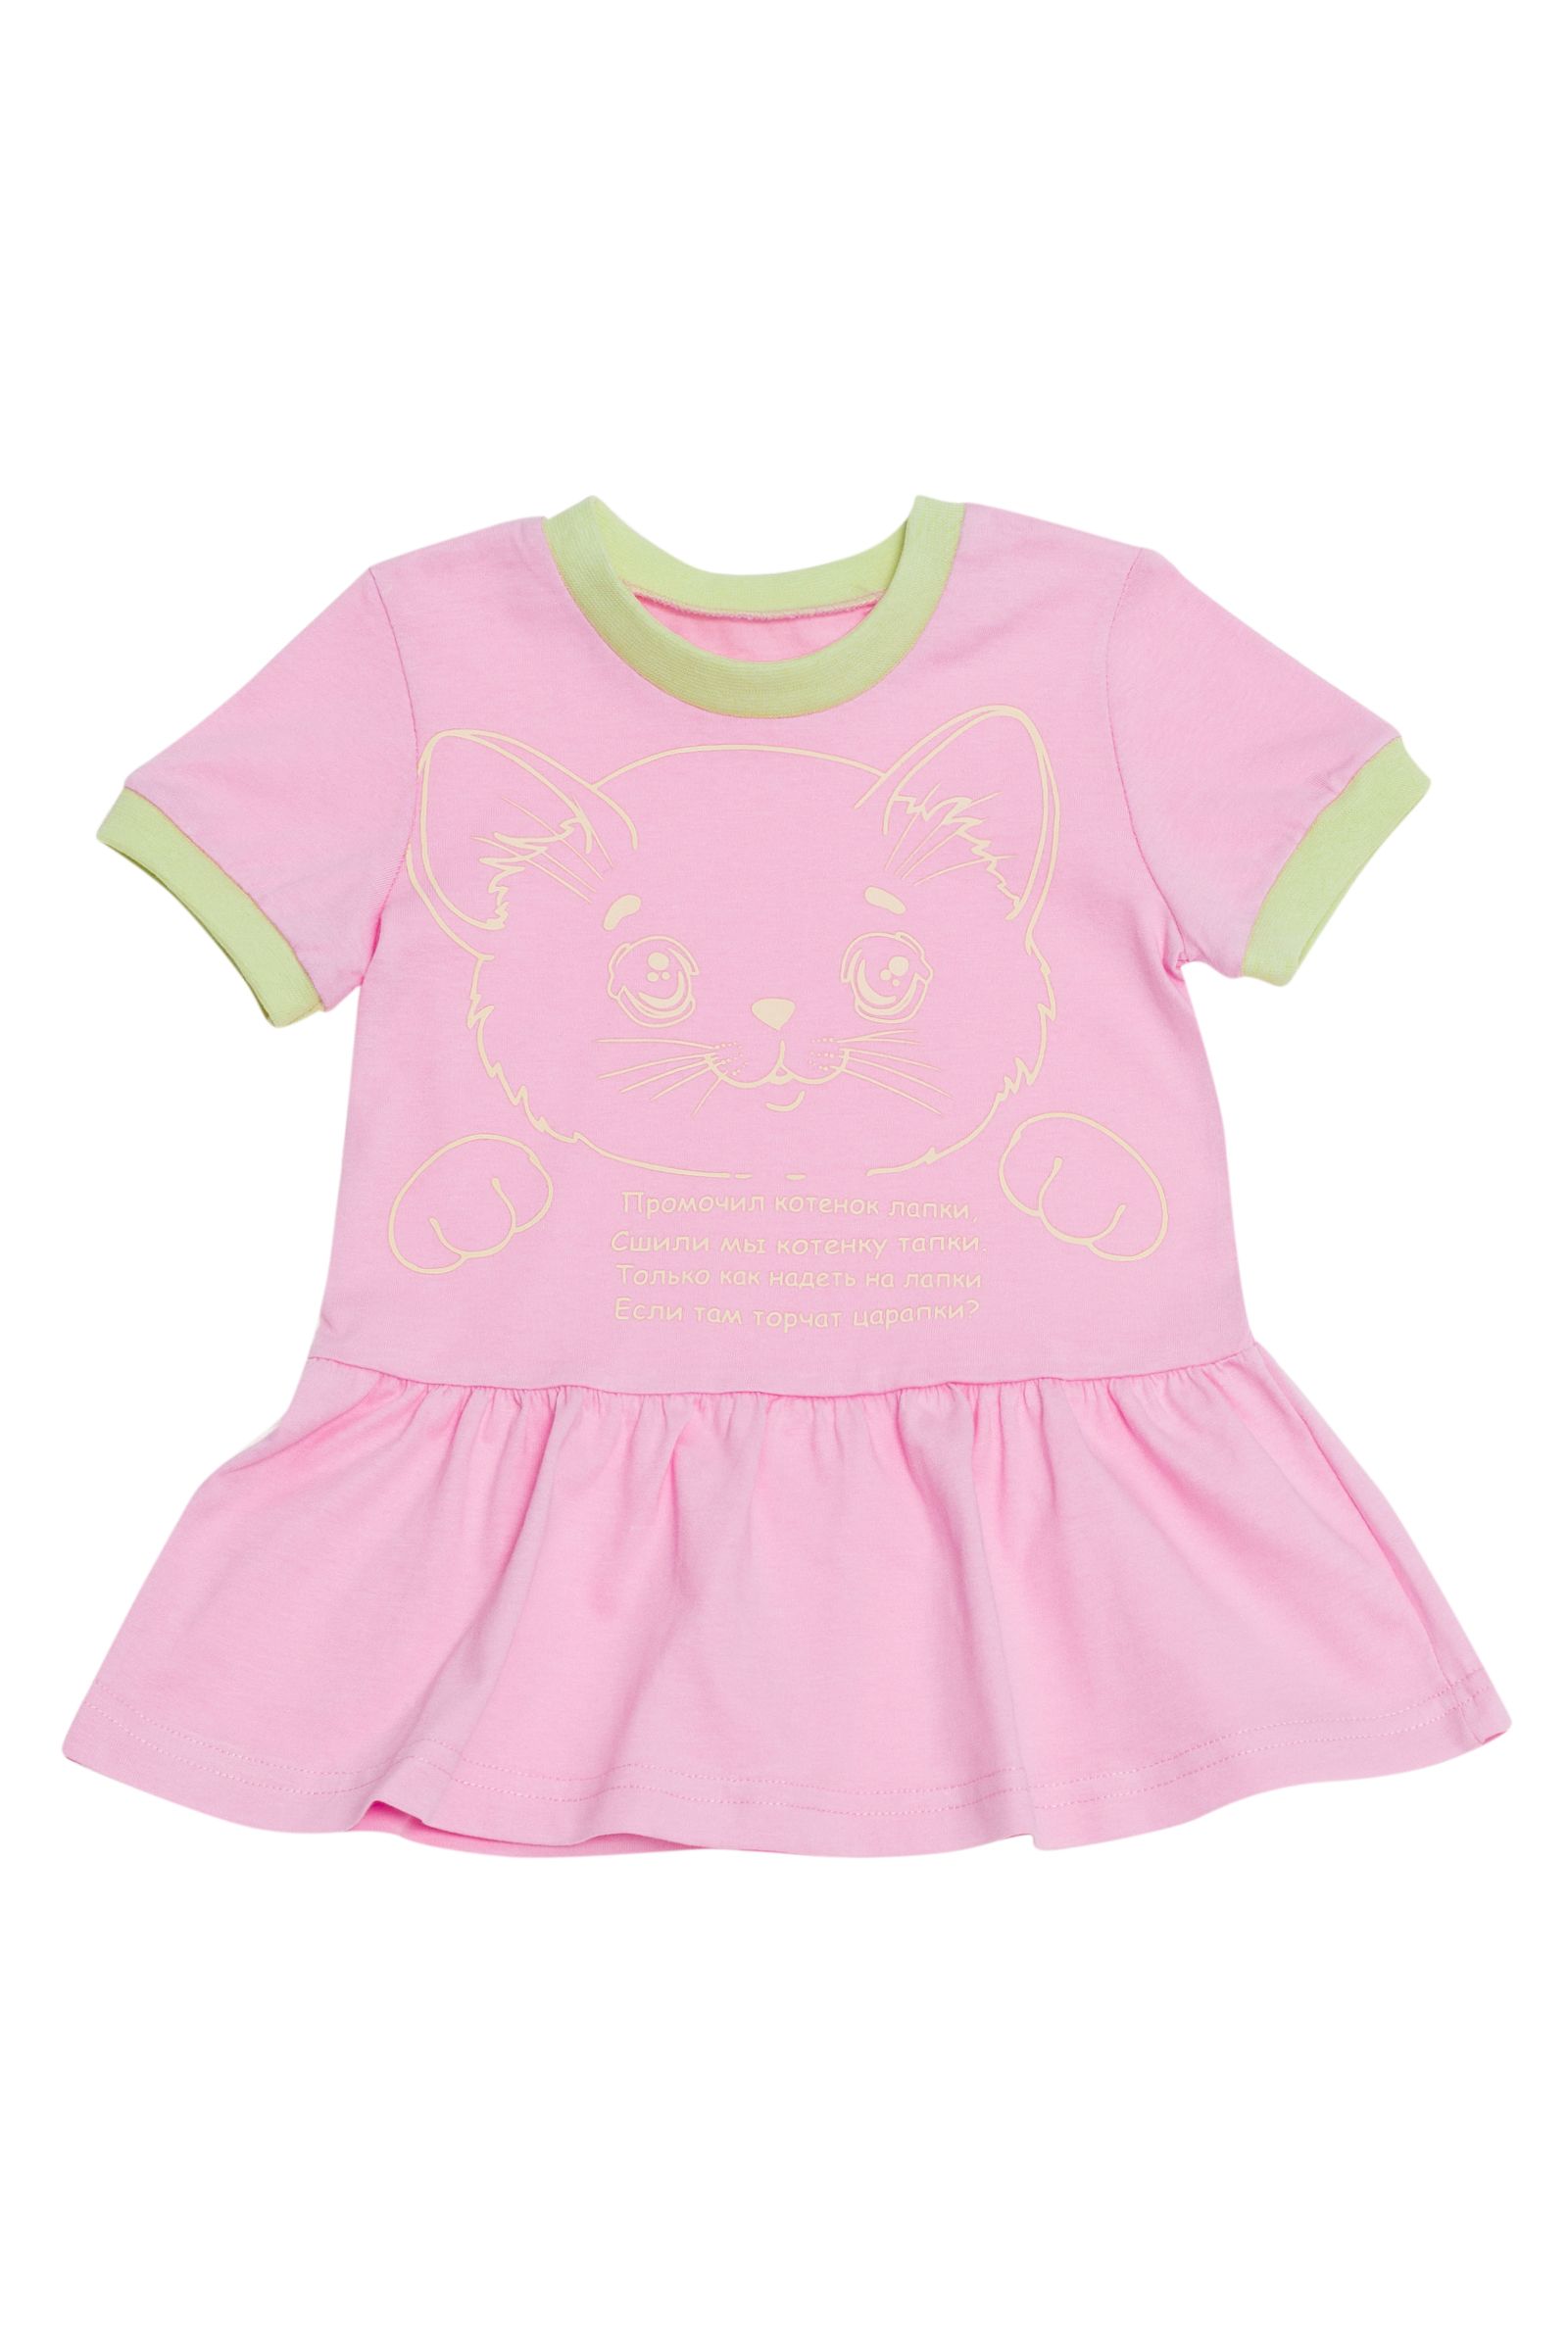 Платье-ПЛ02-2423 оптом от производителя детской одежды 'Алёна'